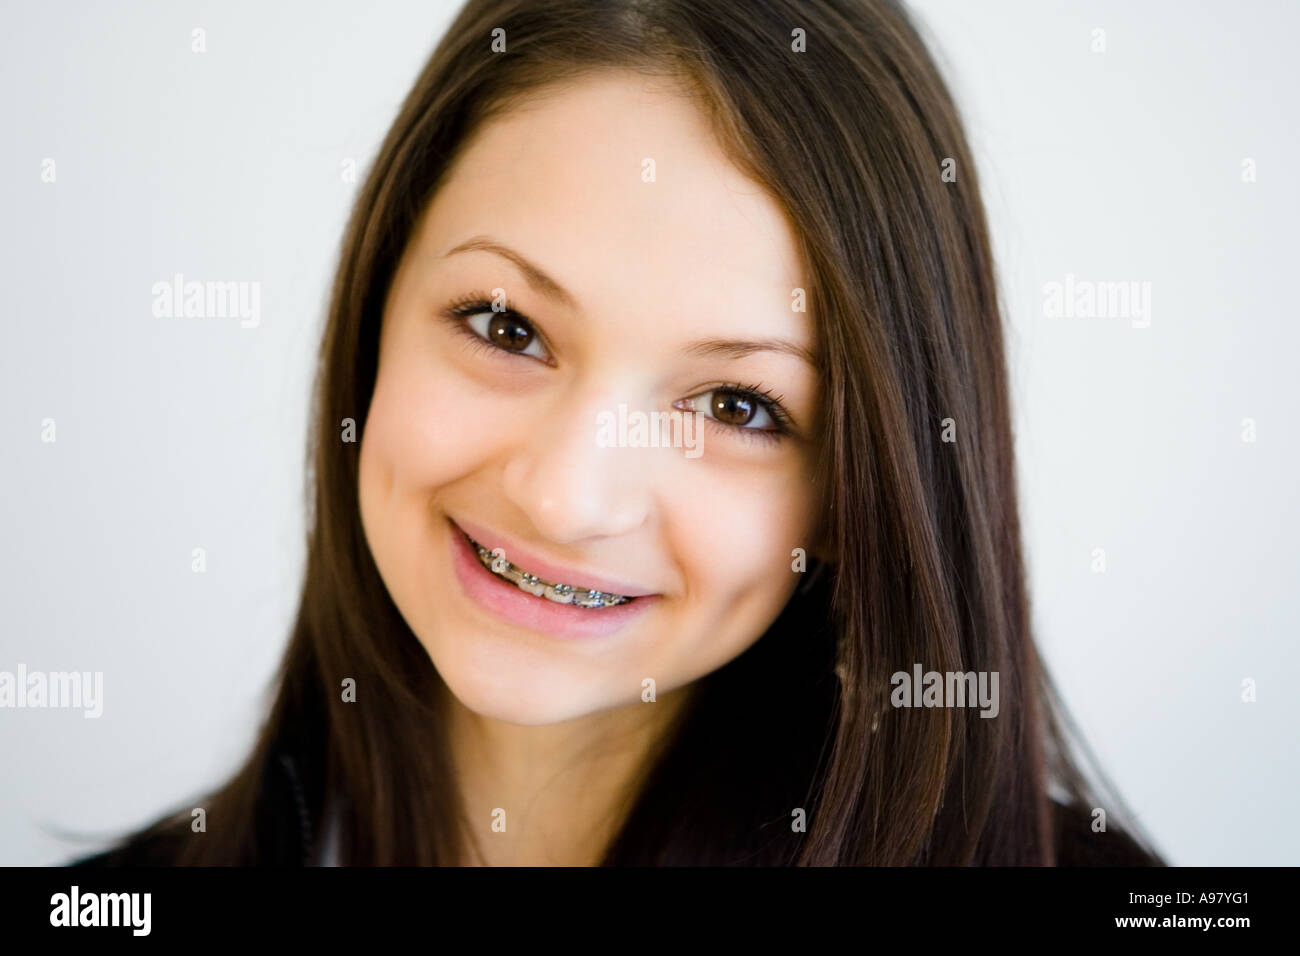 Gesicht eines hübschen Mädchens mit Grübchen und Hosenträger lächelnd Stockfoto